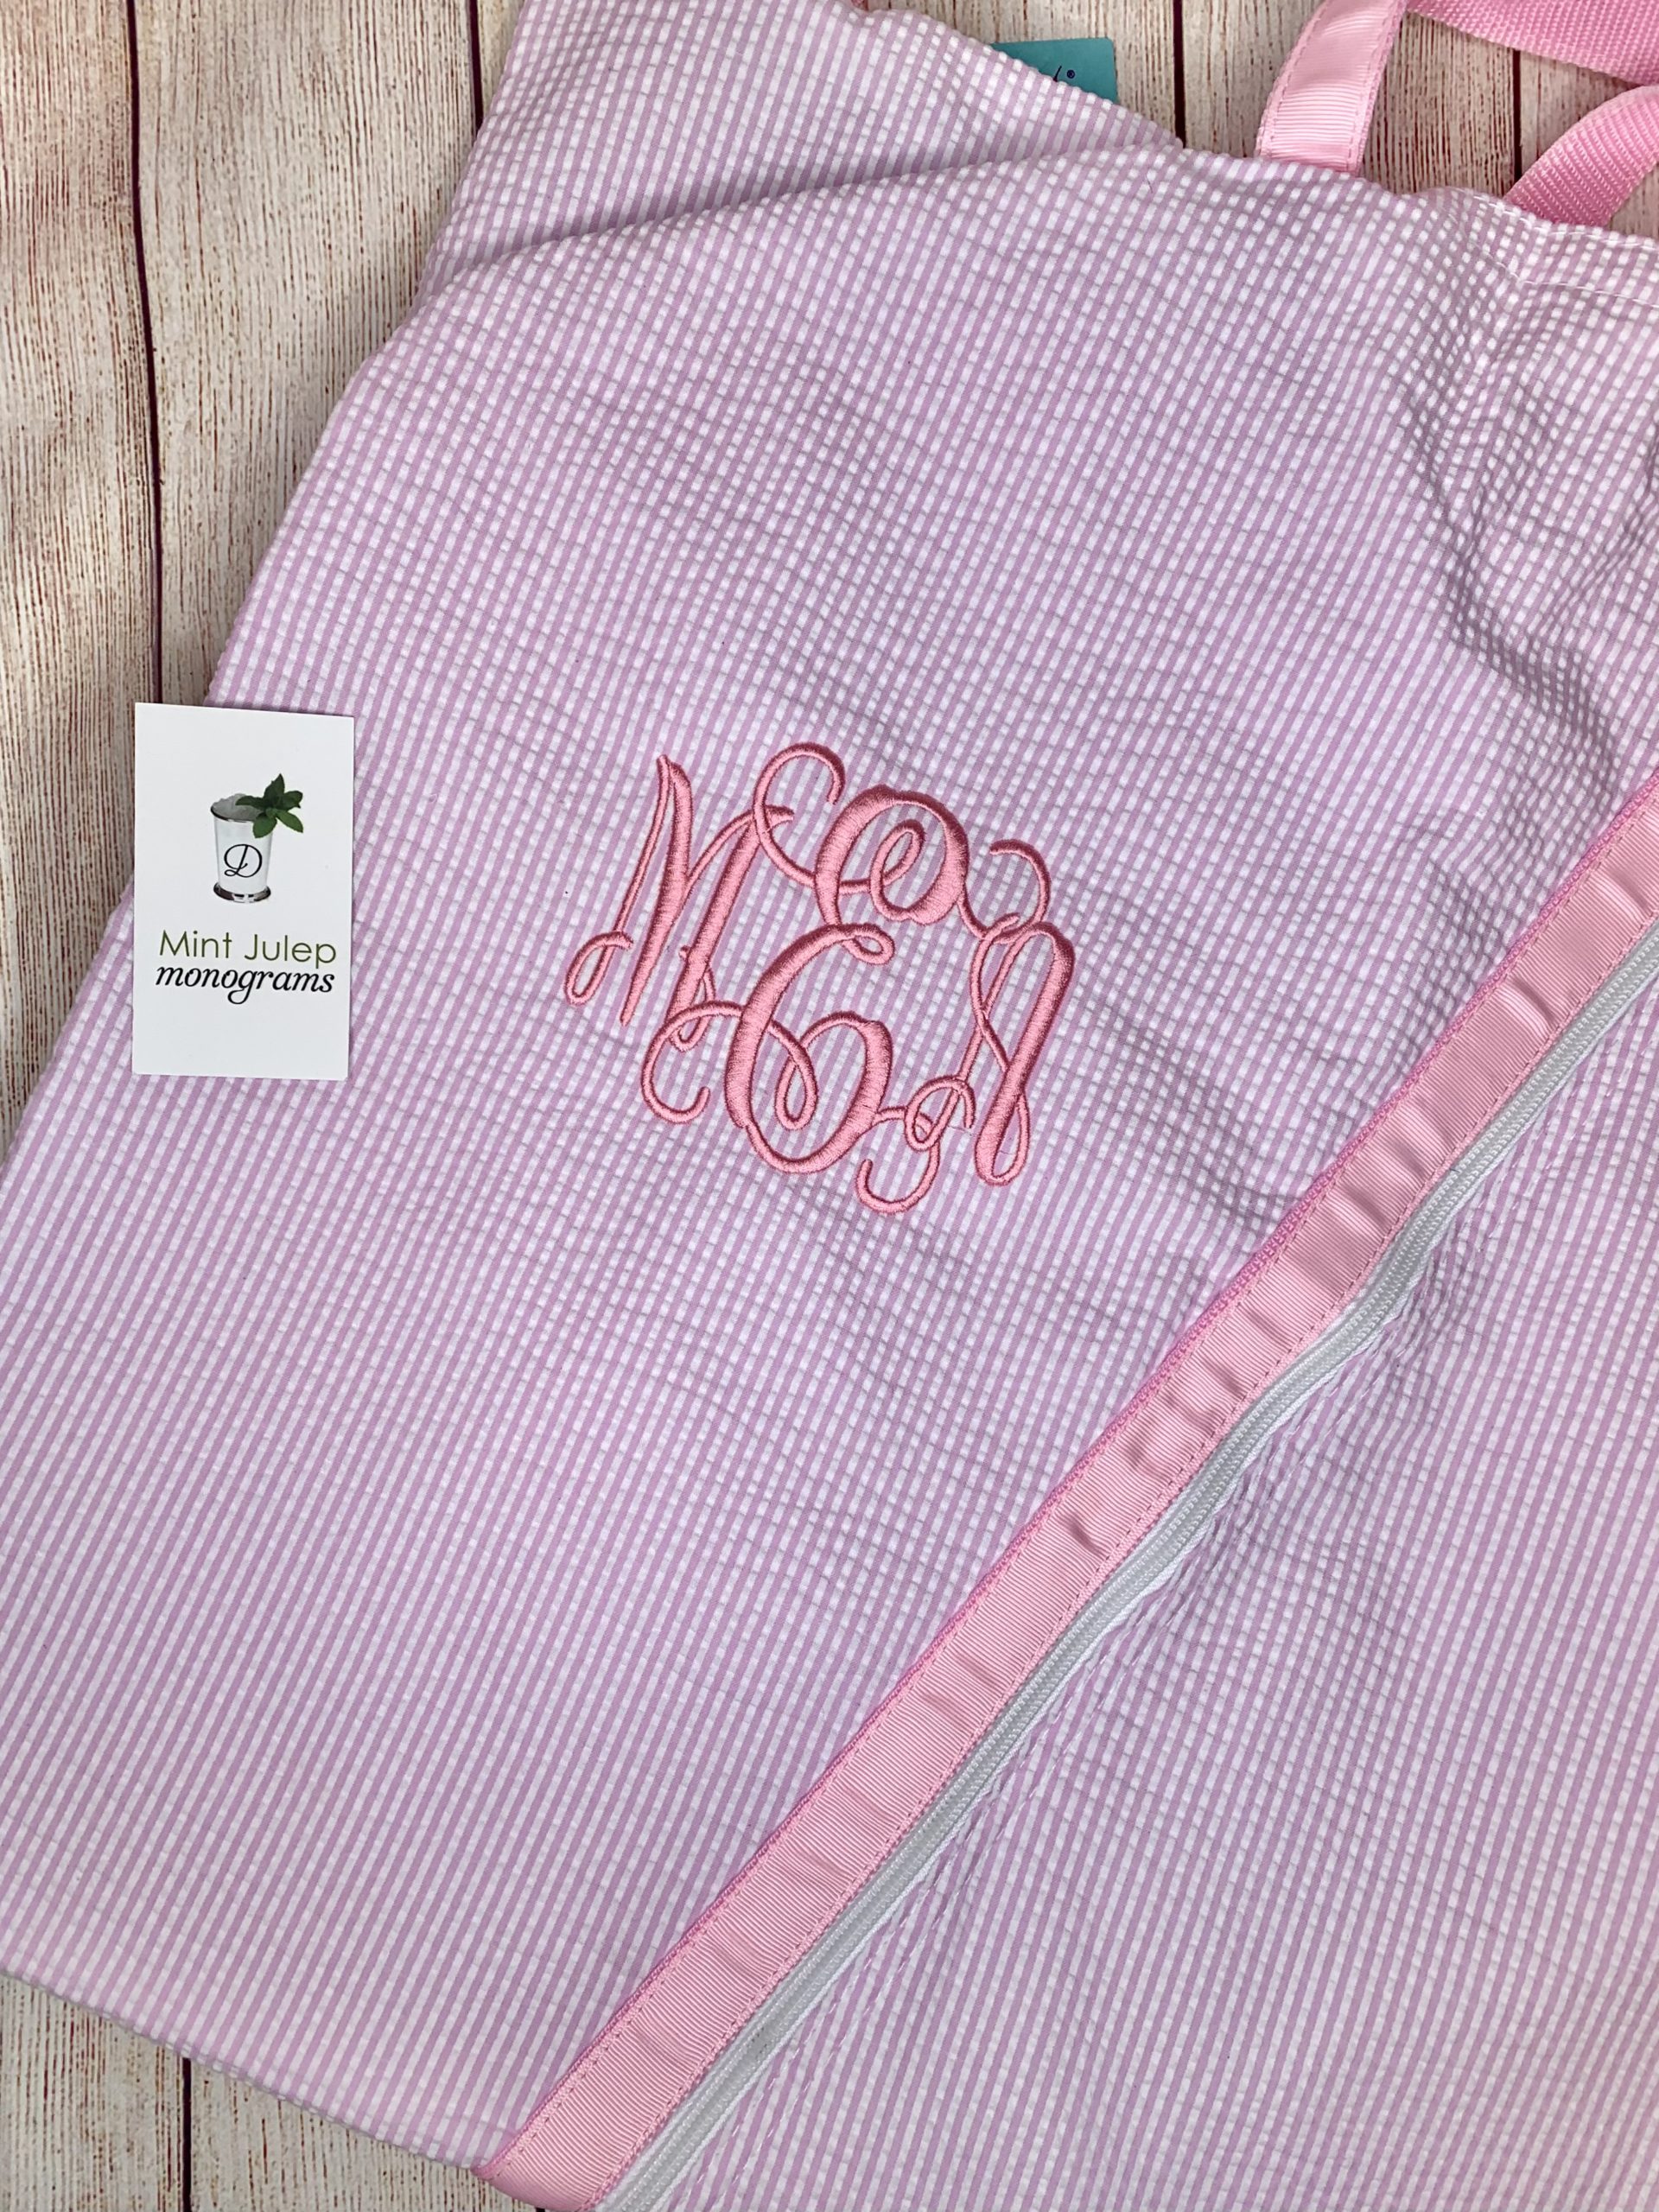 monogram garment bag